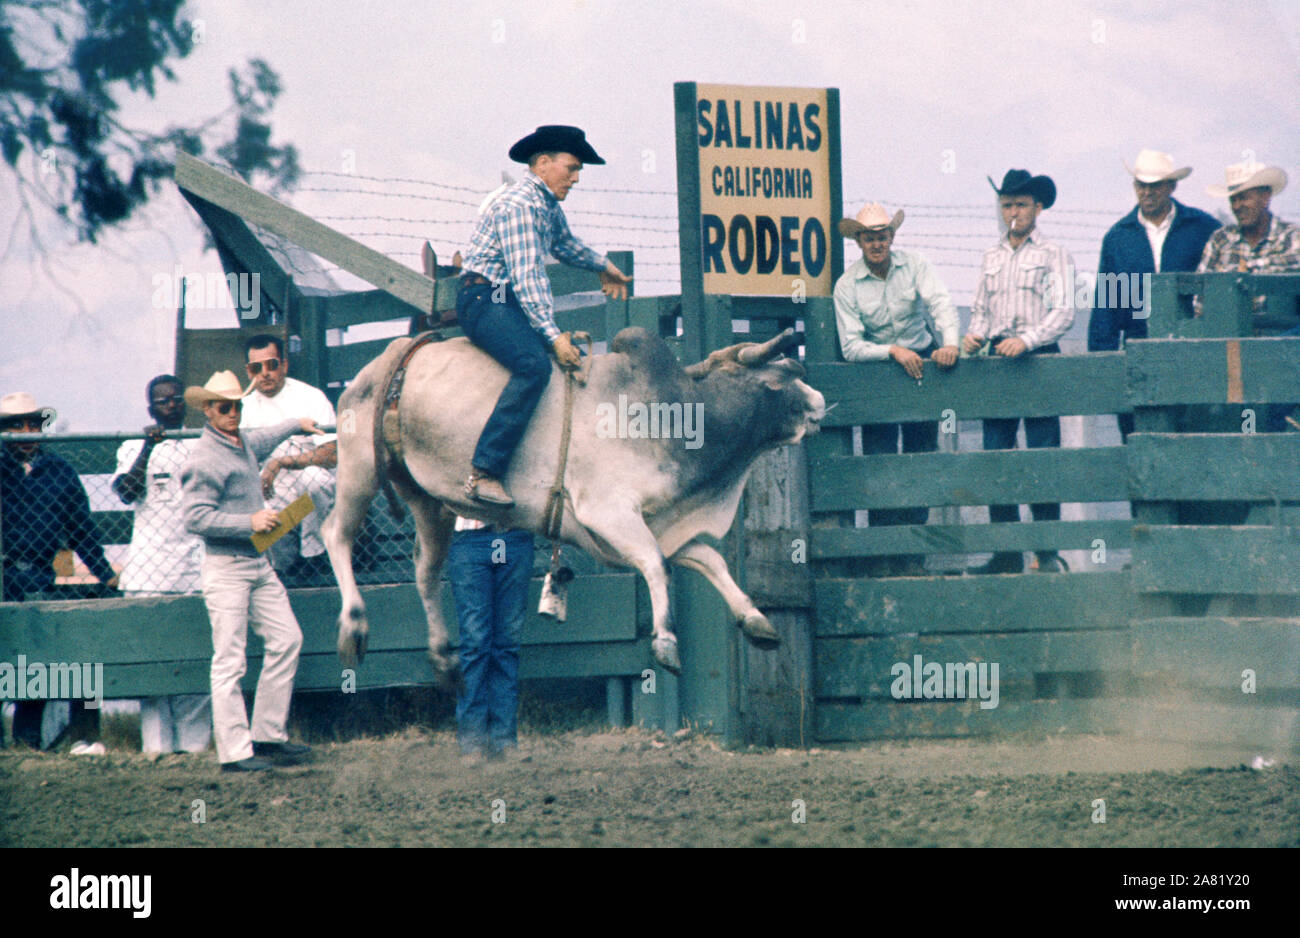 SALINAS, CA - 20 juillet : Un homme non identifié monte un taureau au cours de la California Rodeo le 20 juillet 1961 à Salinas, en Californie. (Photo de Hy Peskin) Banque D'Images